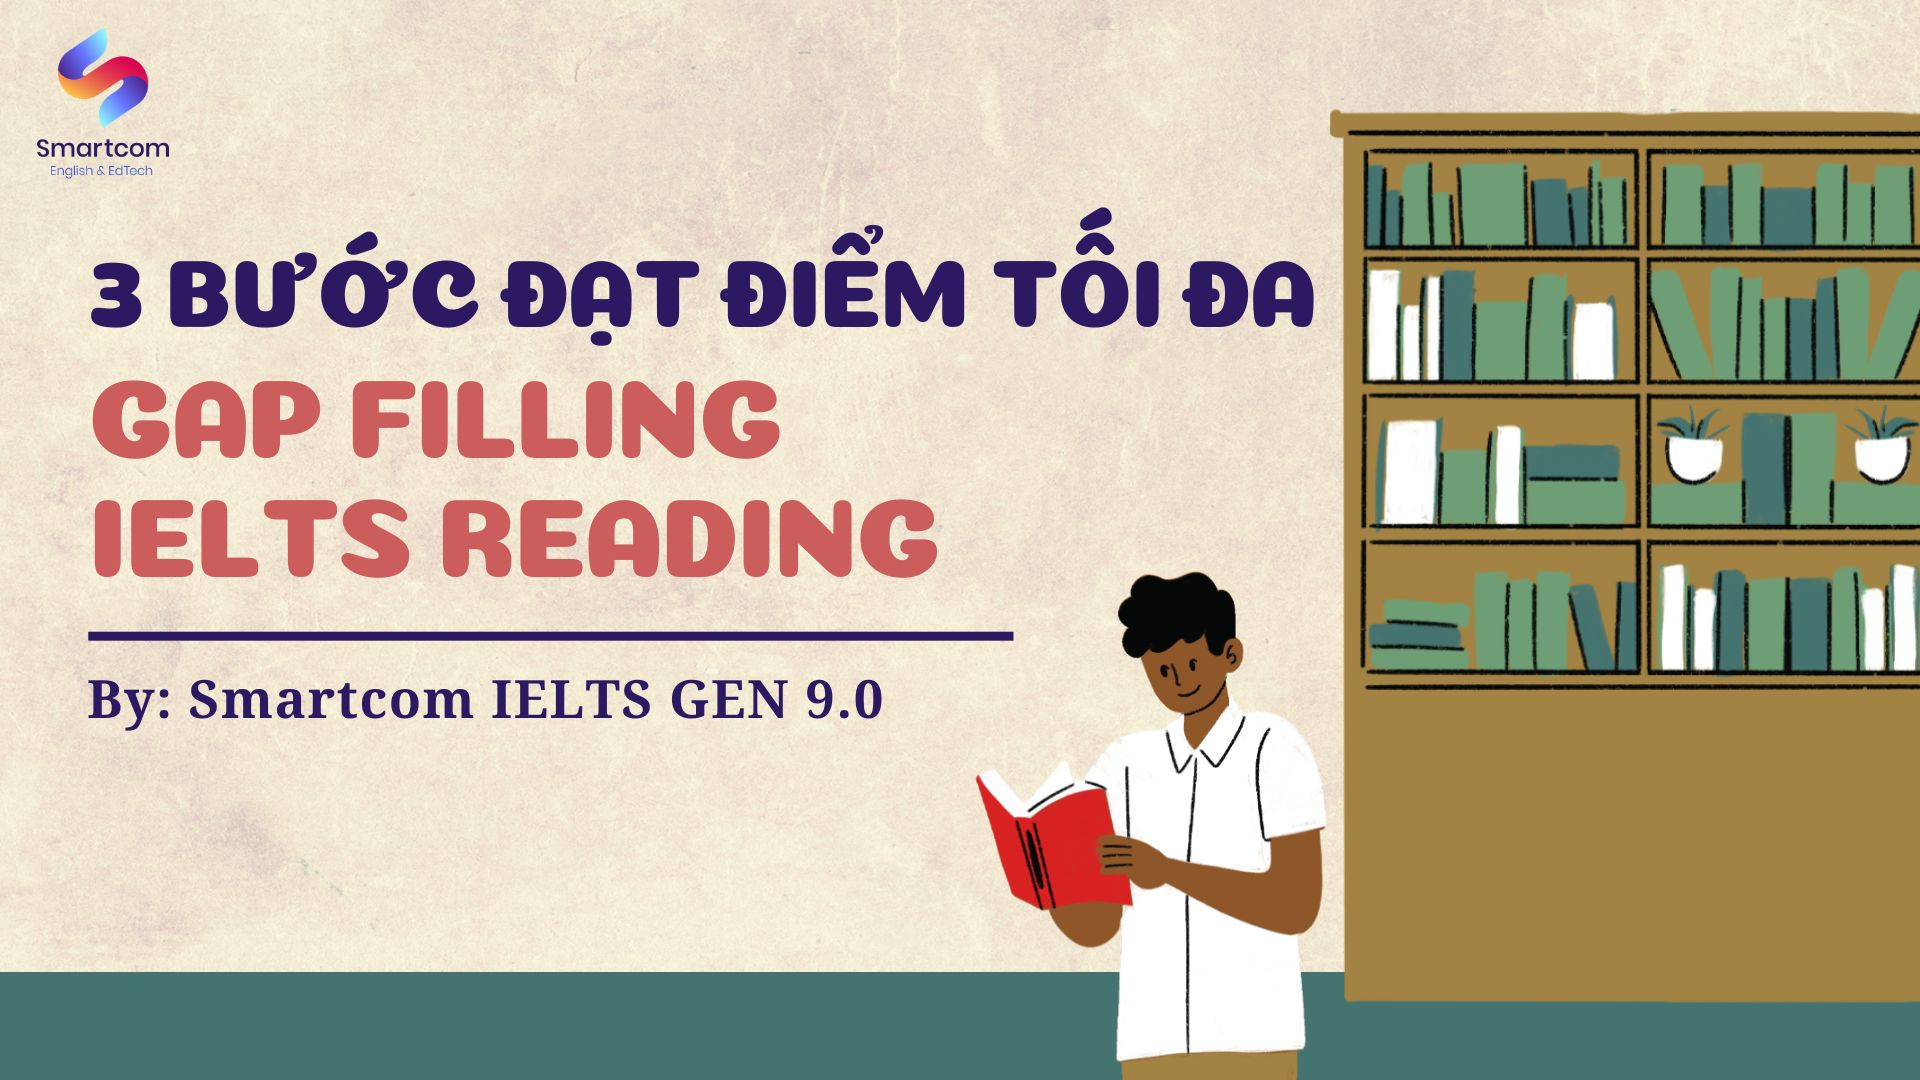 3 bước đạt điểm tối đa dạng bài Gap Filling IELTS Reading